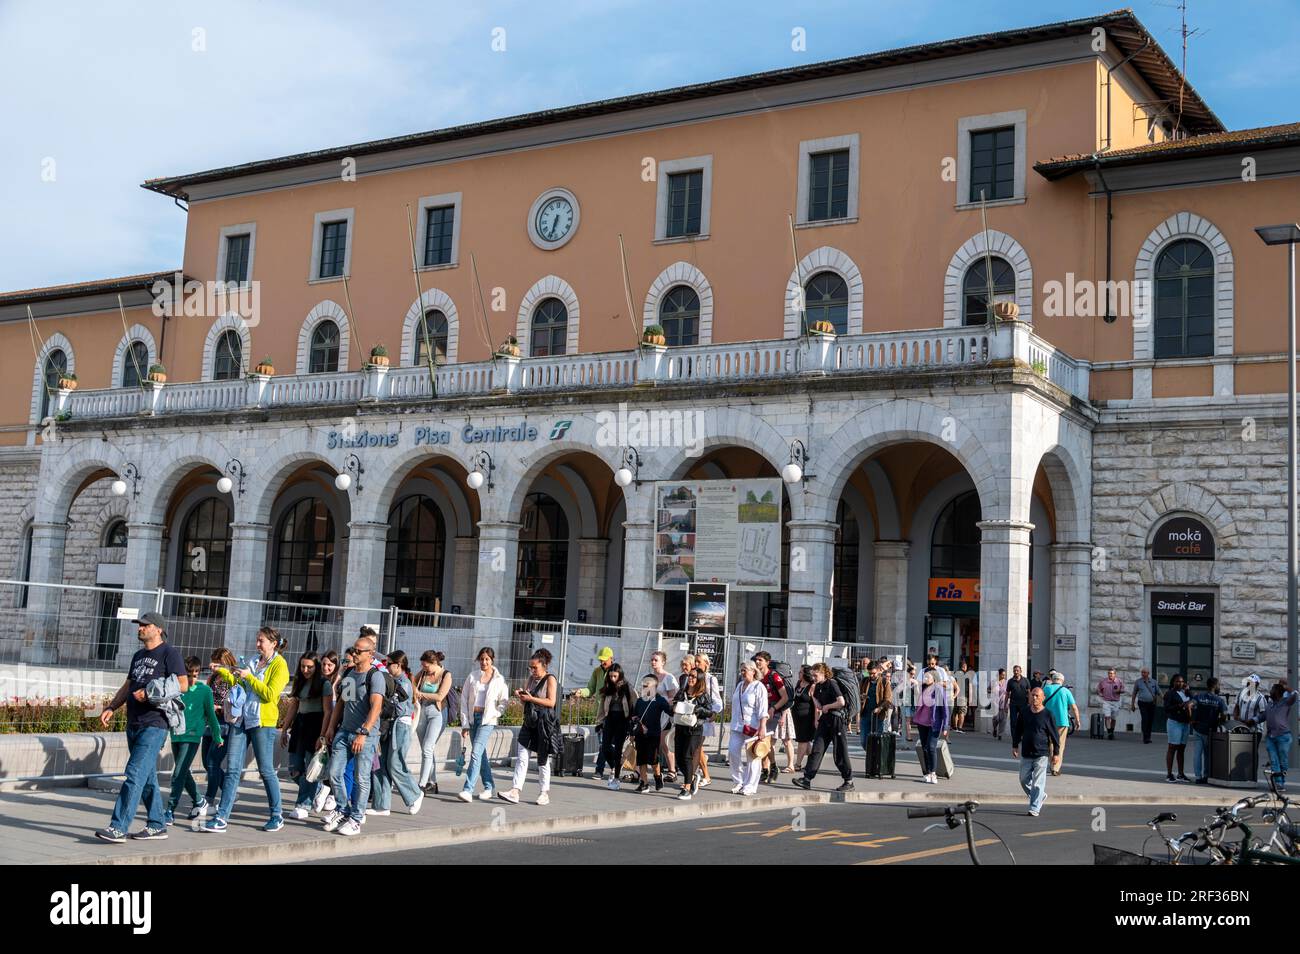 La gare centrale de Pise (gare centrale de Pise) est un terminal ferroviaire situé à Pise dans la région toscane de l'Italie. Banque D'Images